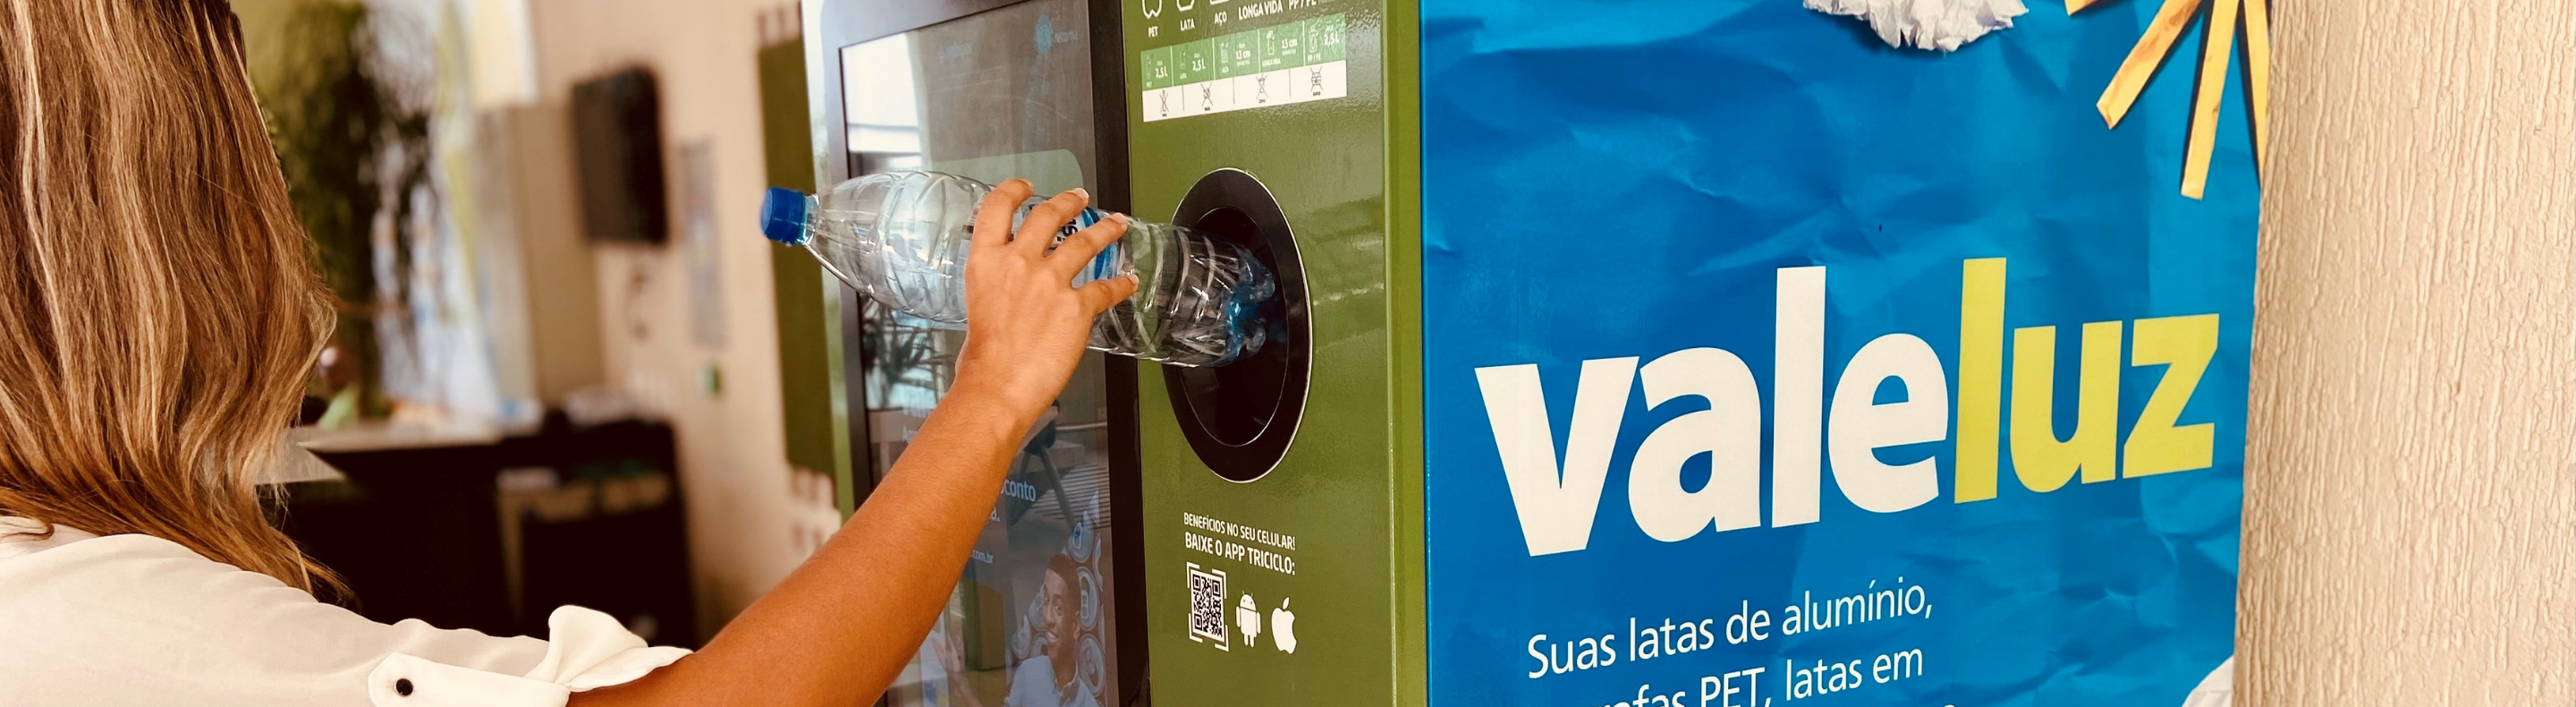 Imagem mostra mulher depositando uma garrafa plástica em uma máquina de reciclagem do projeto Vale Luz, da Neoenergia